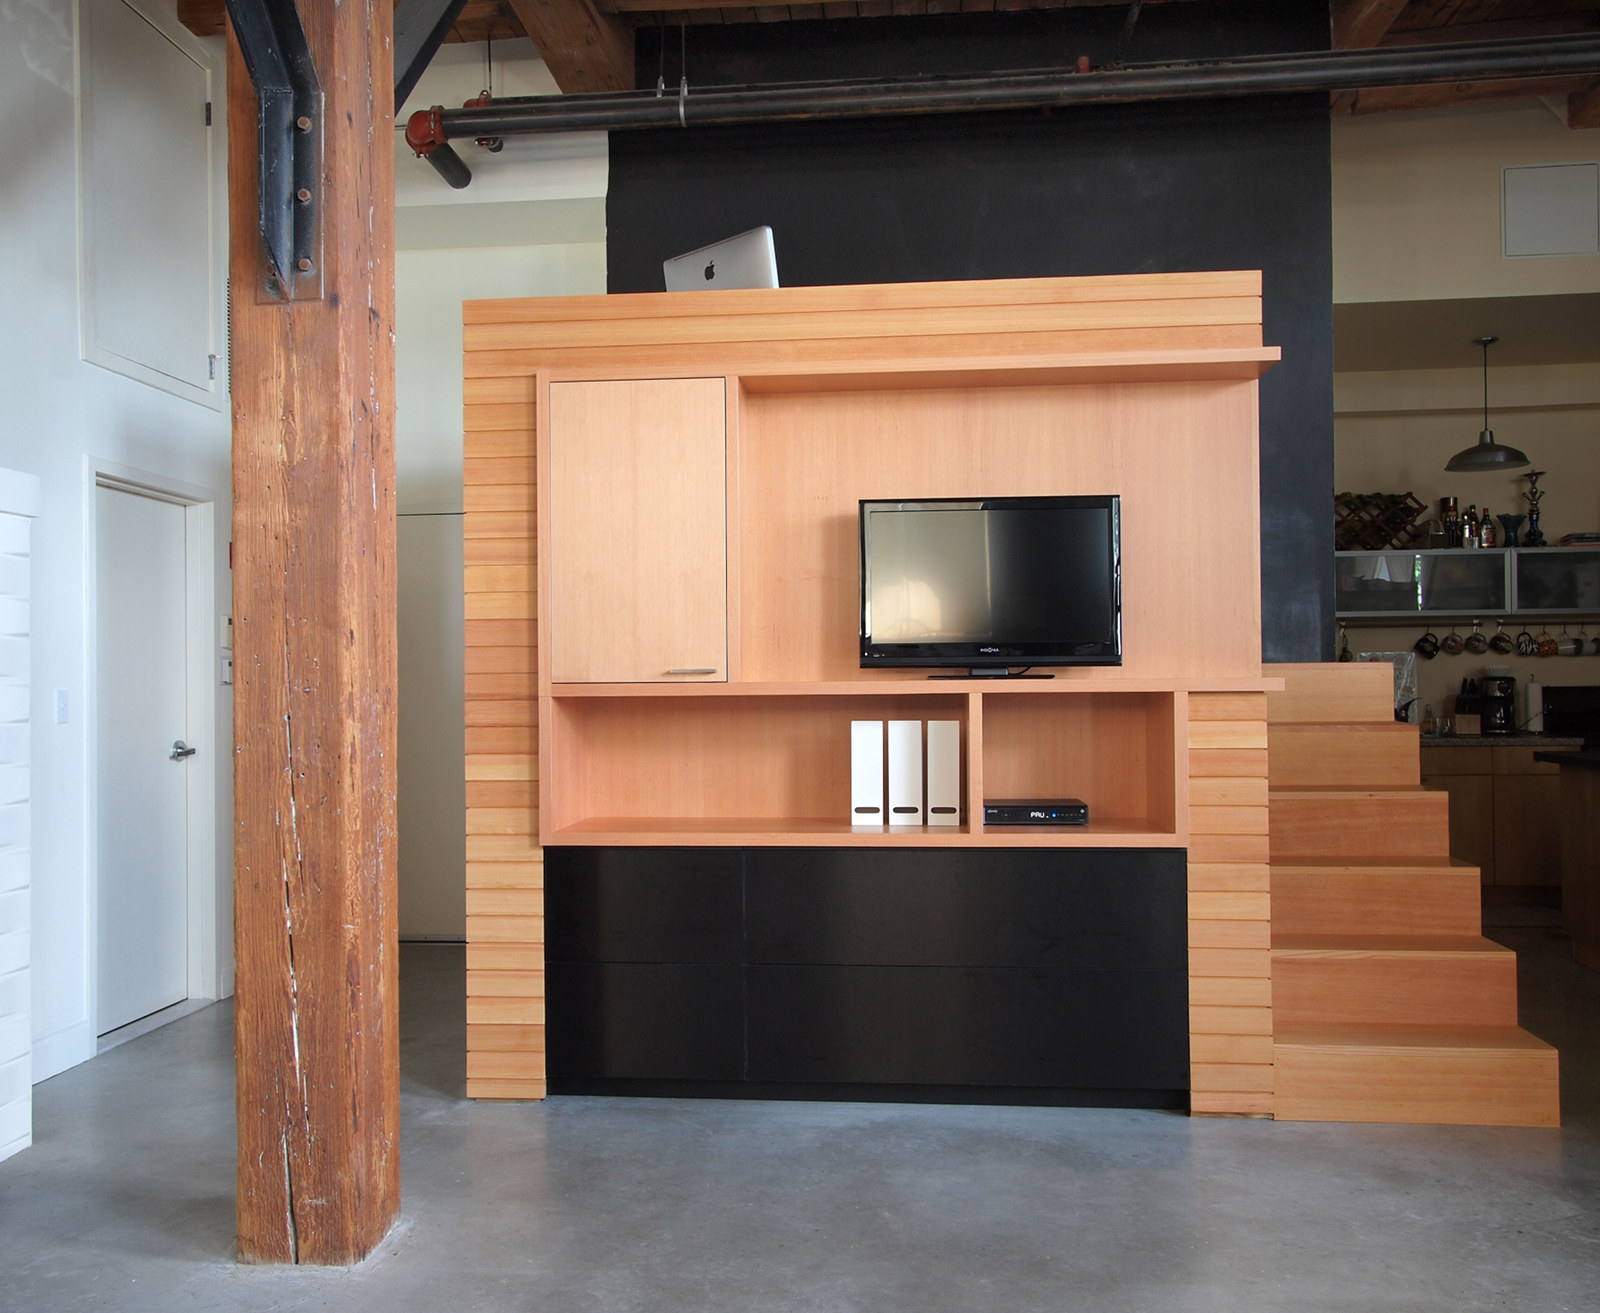 Loft renovation with custom media center, tv cabinet.